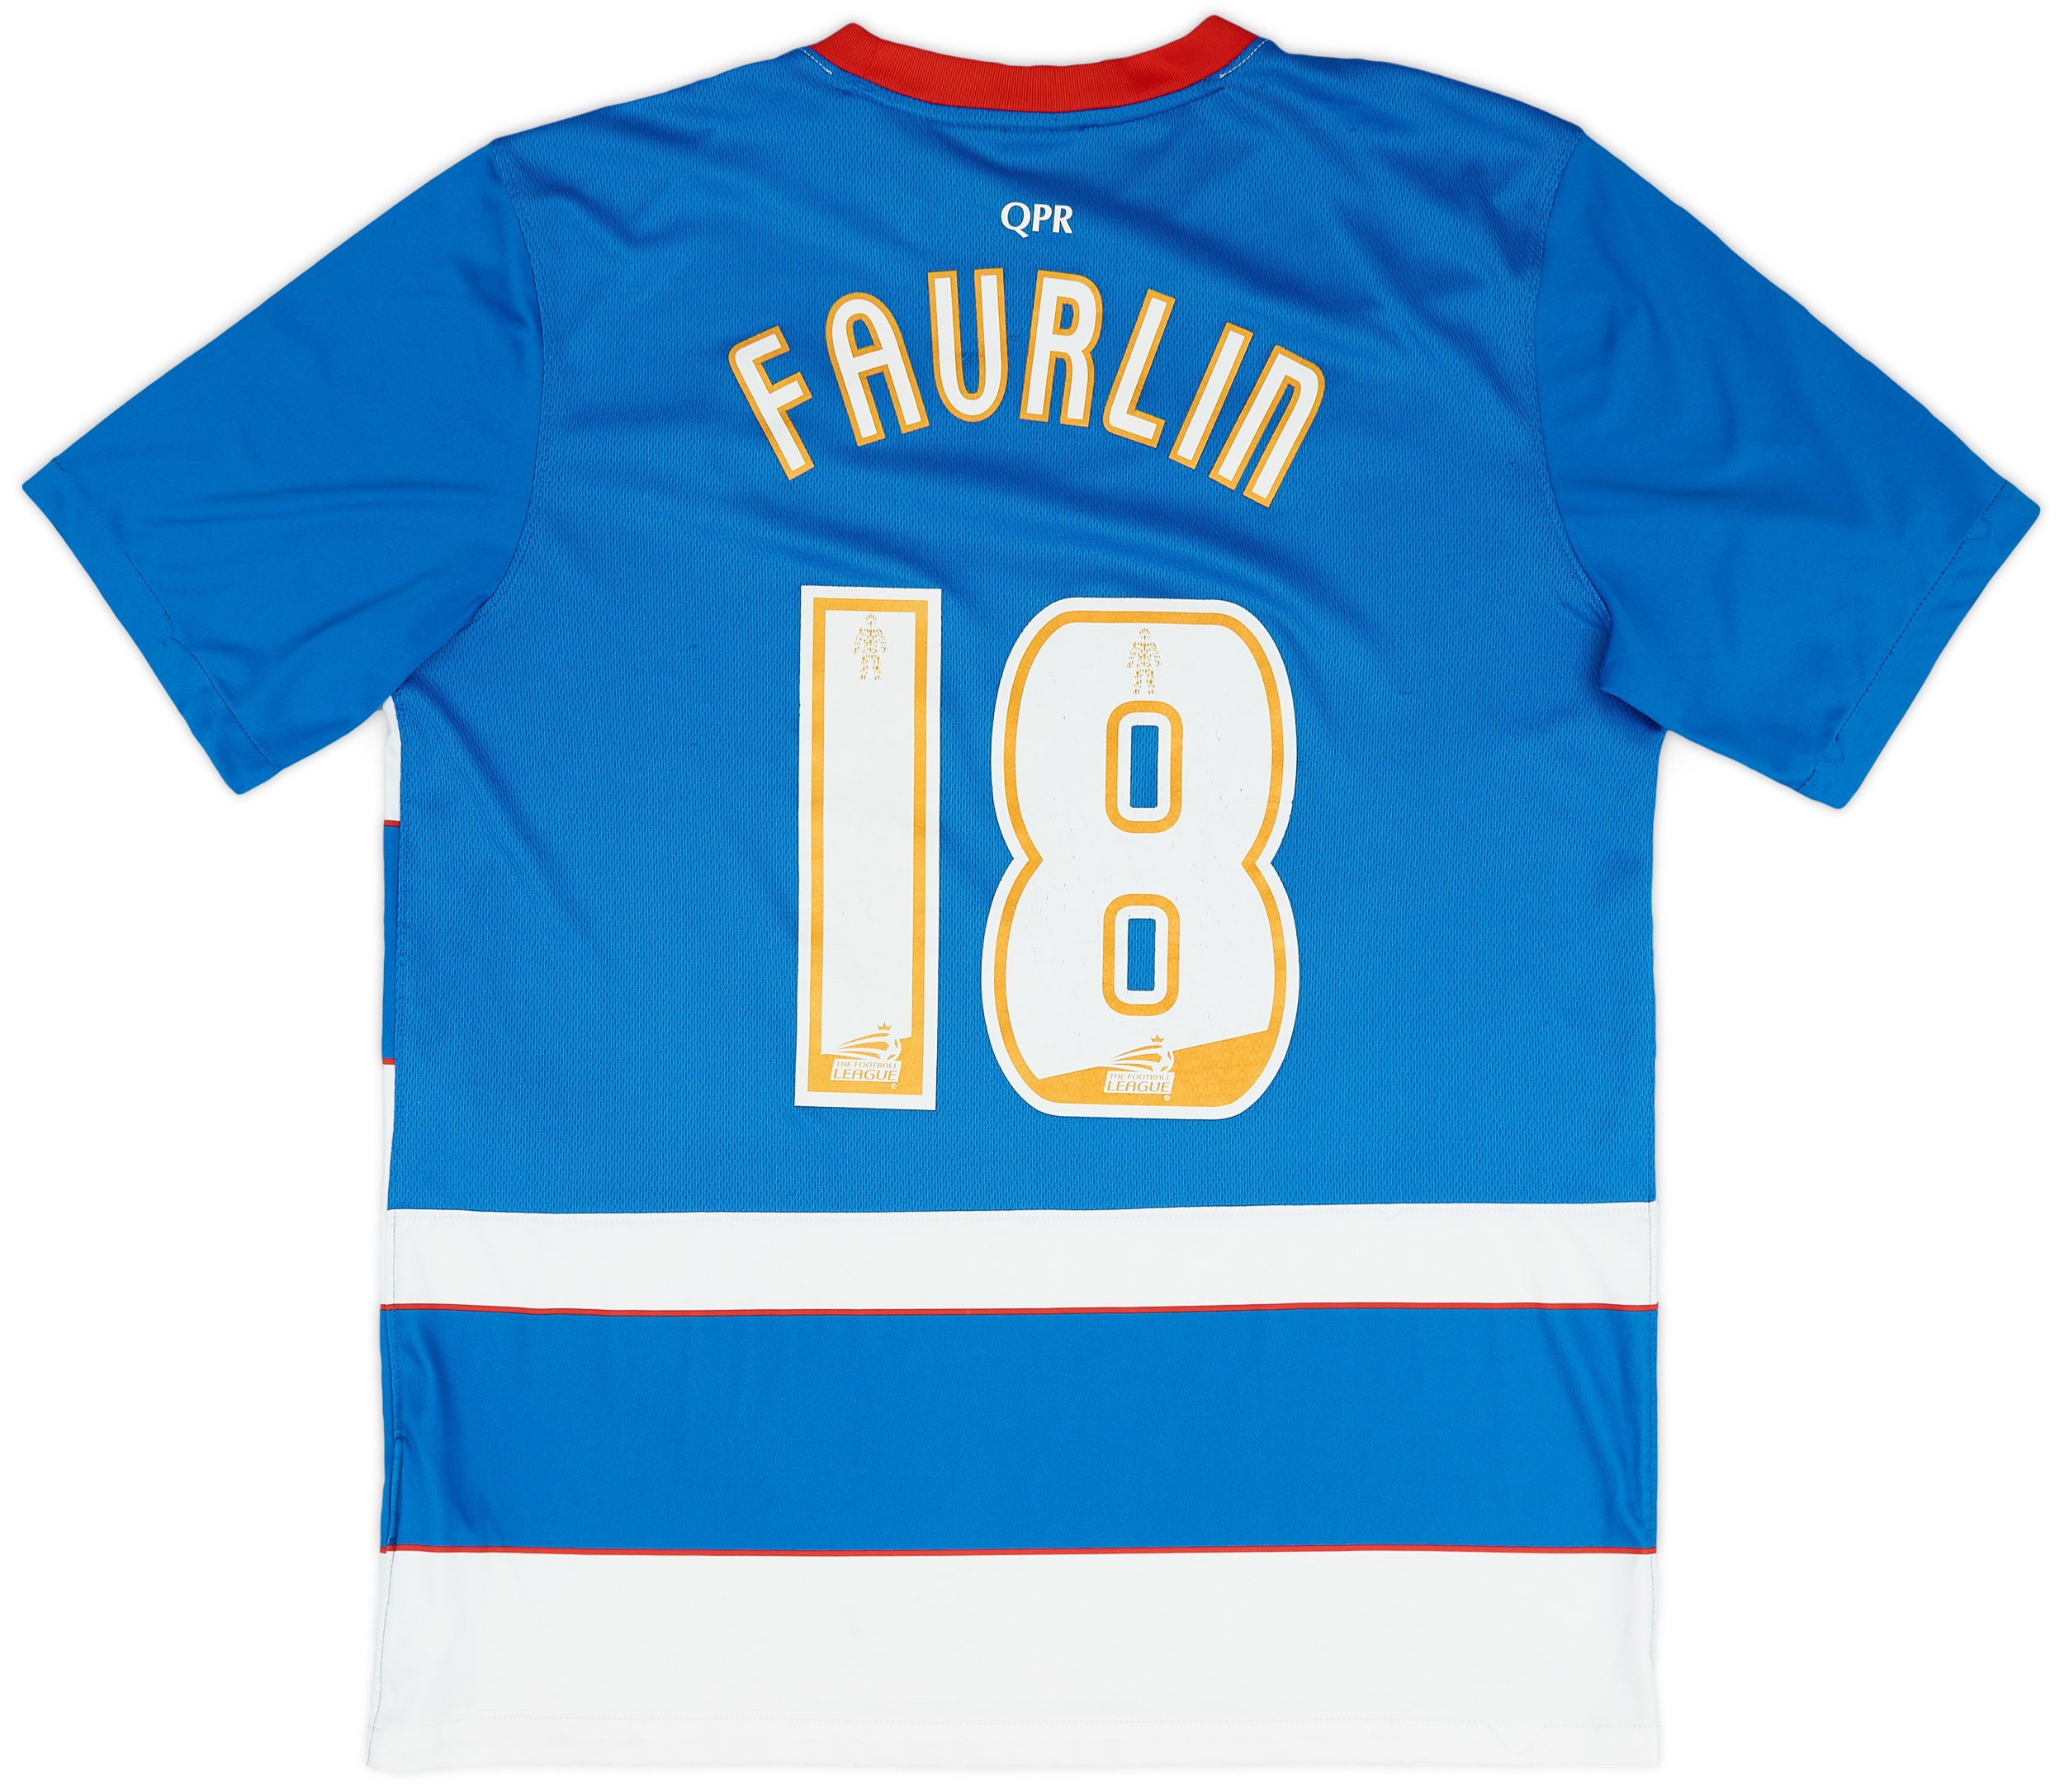 2015-16 QPR Home Shirt Faurlin #18 - 6/10 - ()